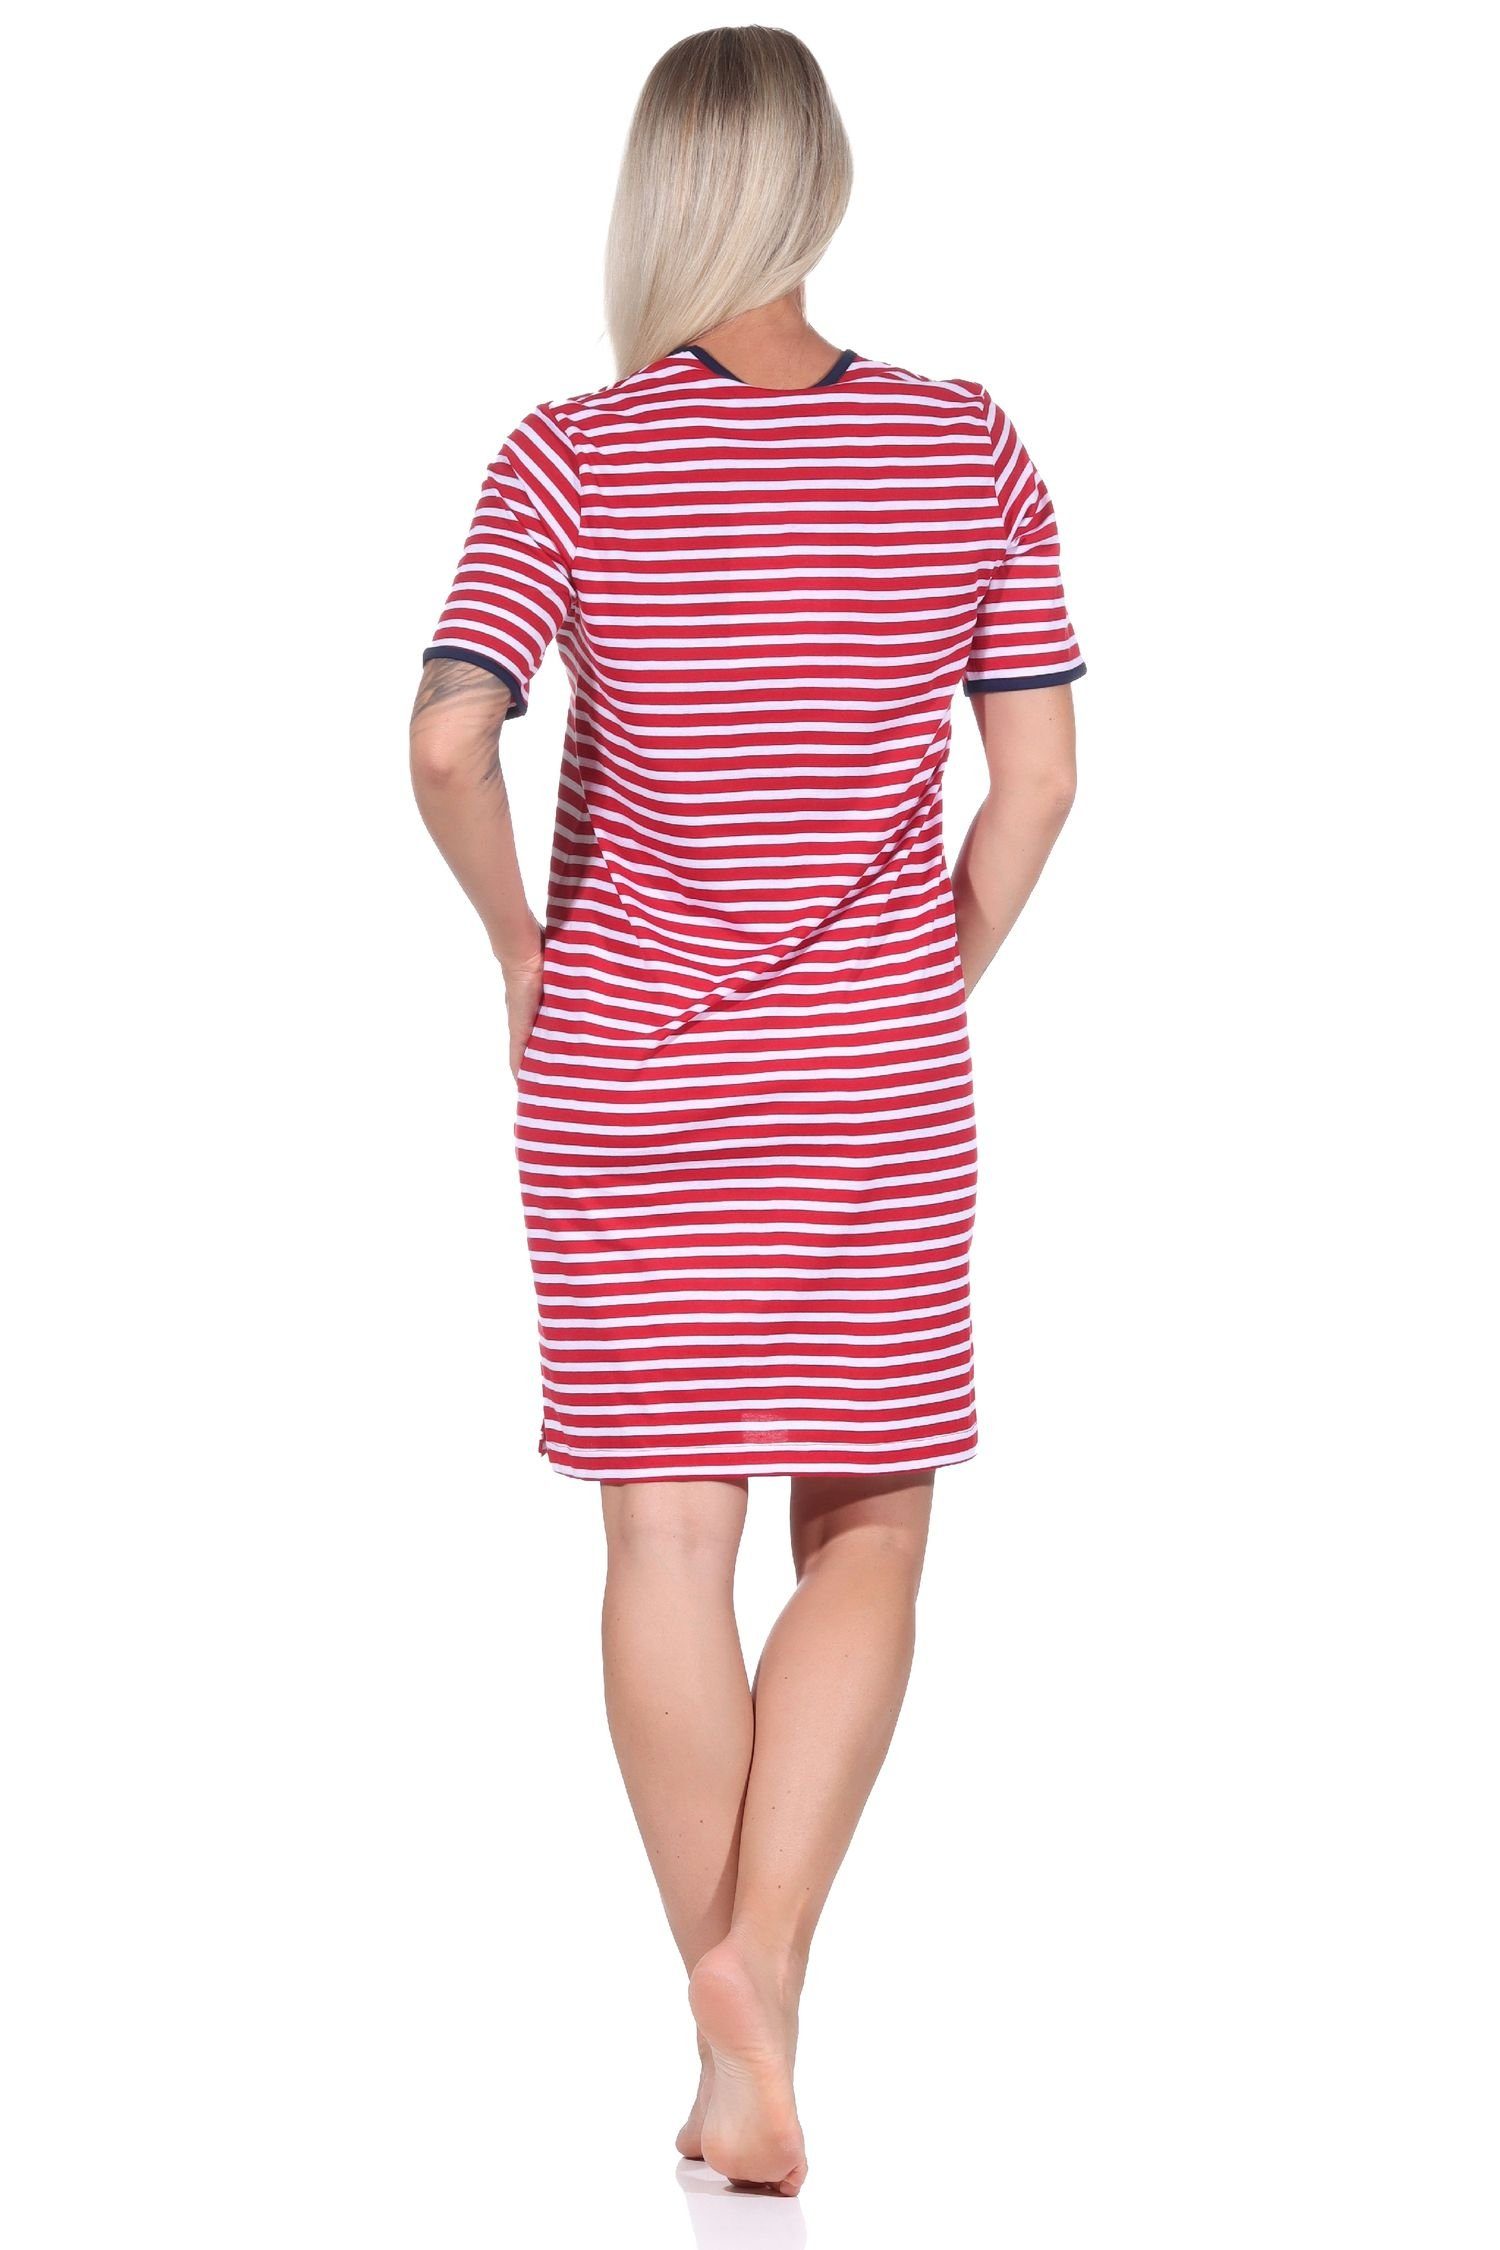 Normann Nachthemd Maritimes kurzarm Damen Übergrösse in Anker Motiv, mit Nachthemd auch rot